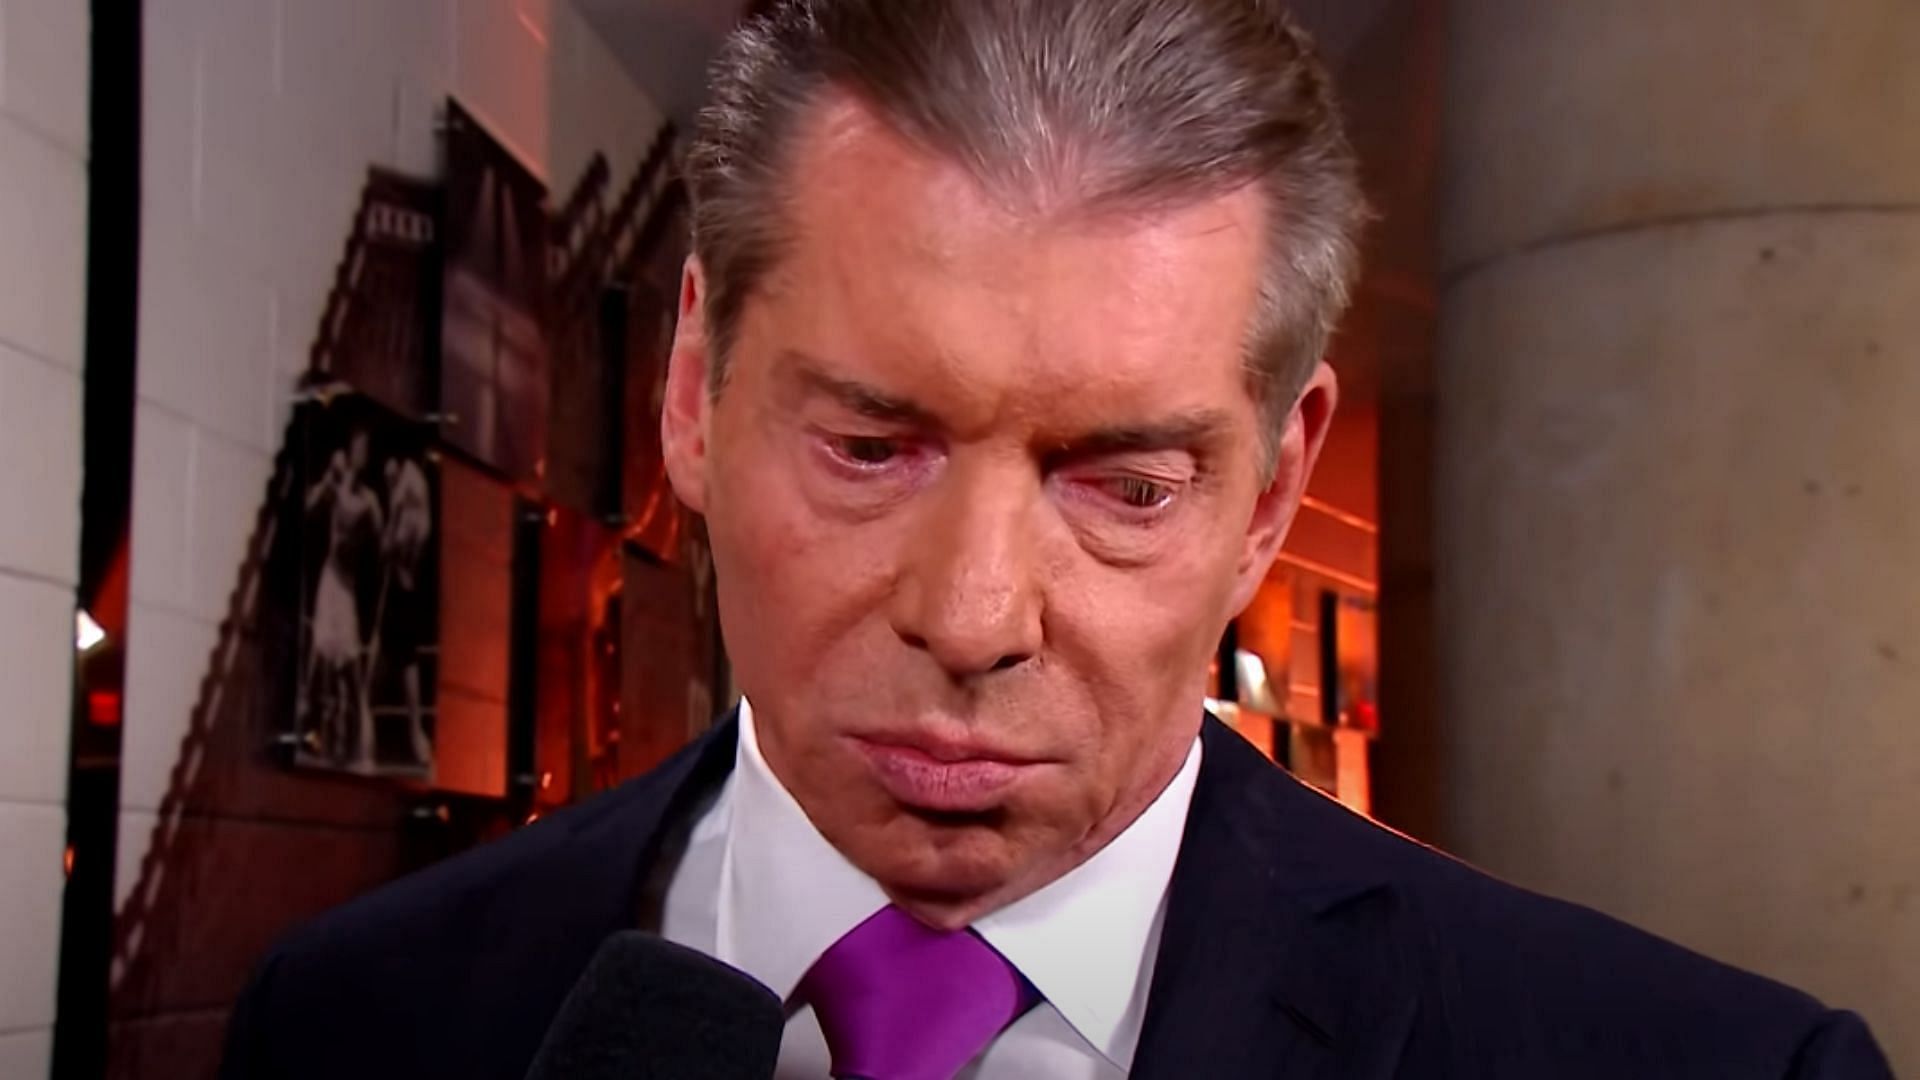 Vince McMahon oversaw WWE